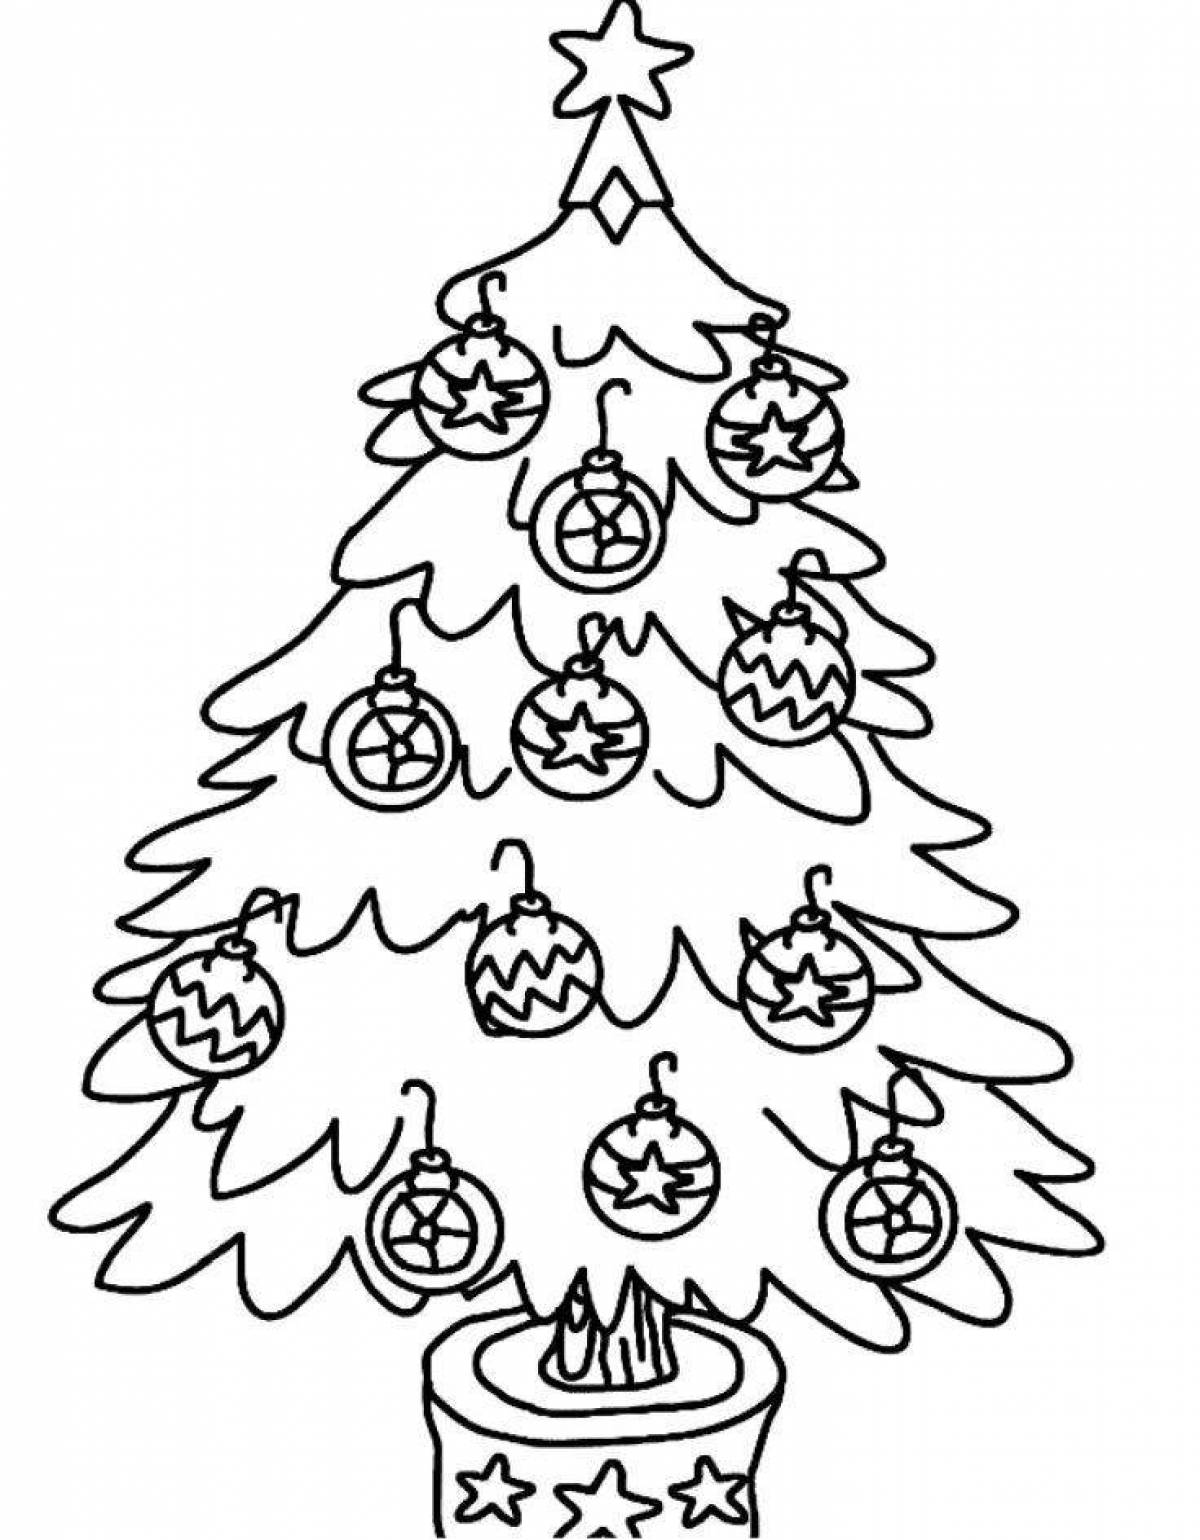 Joyful Christmas tree with balls